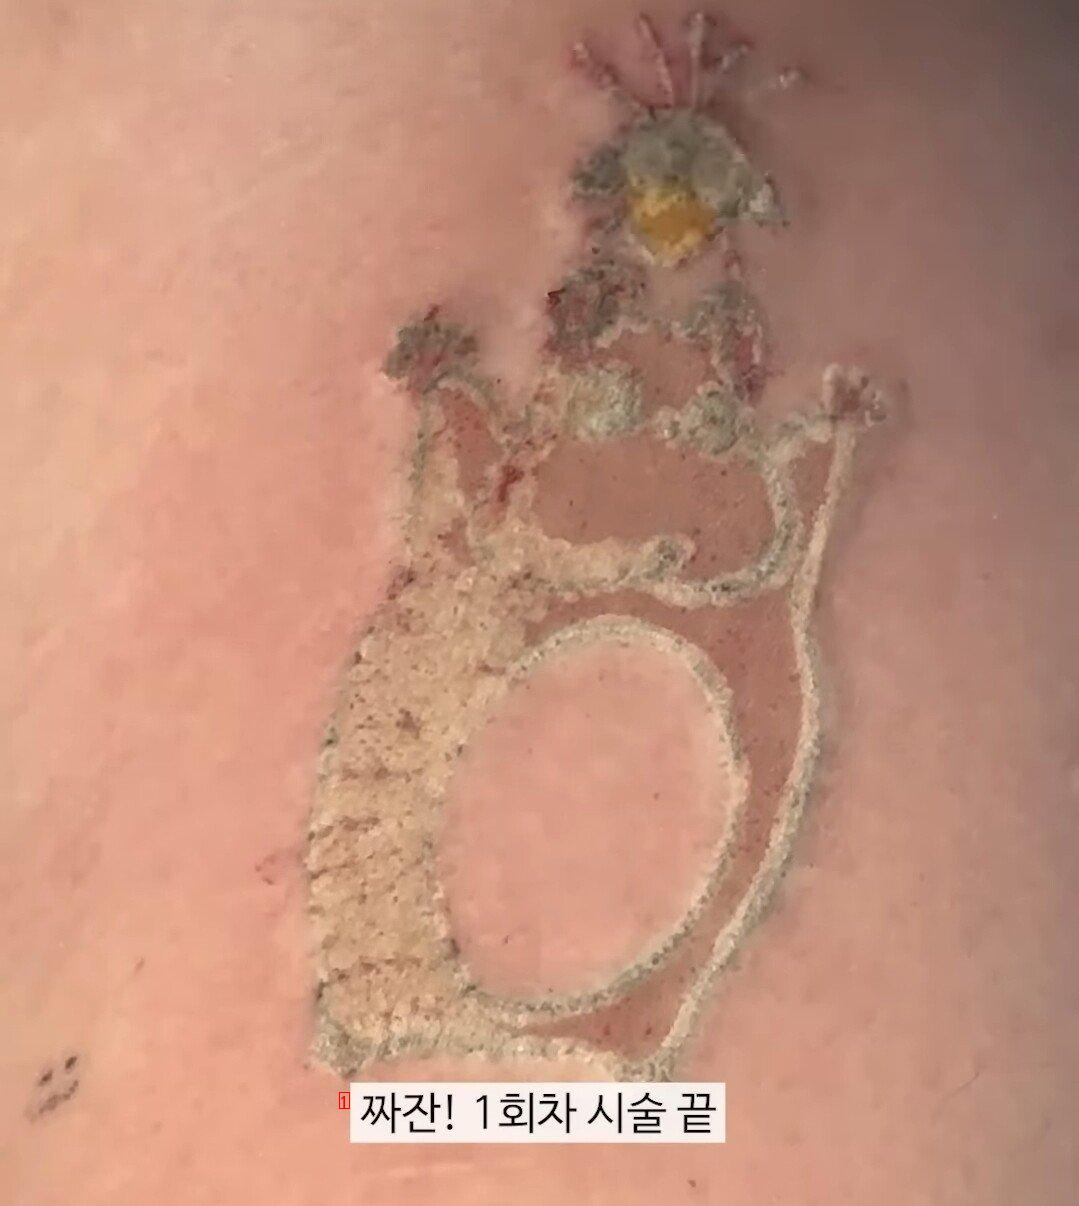 약혐) 귀여운 문신제거 시술하는 영상......GIF